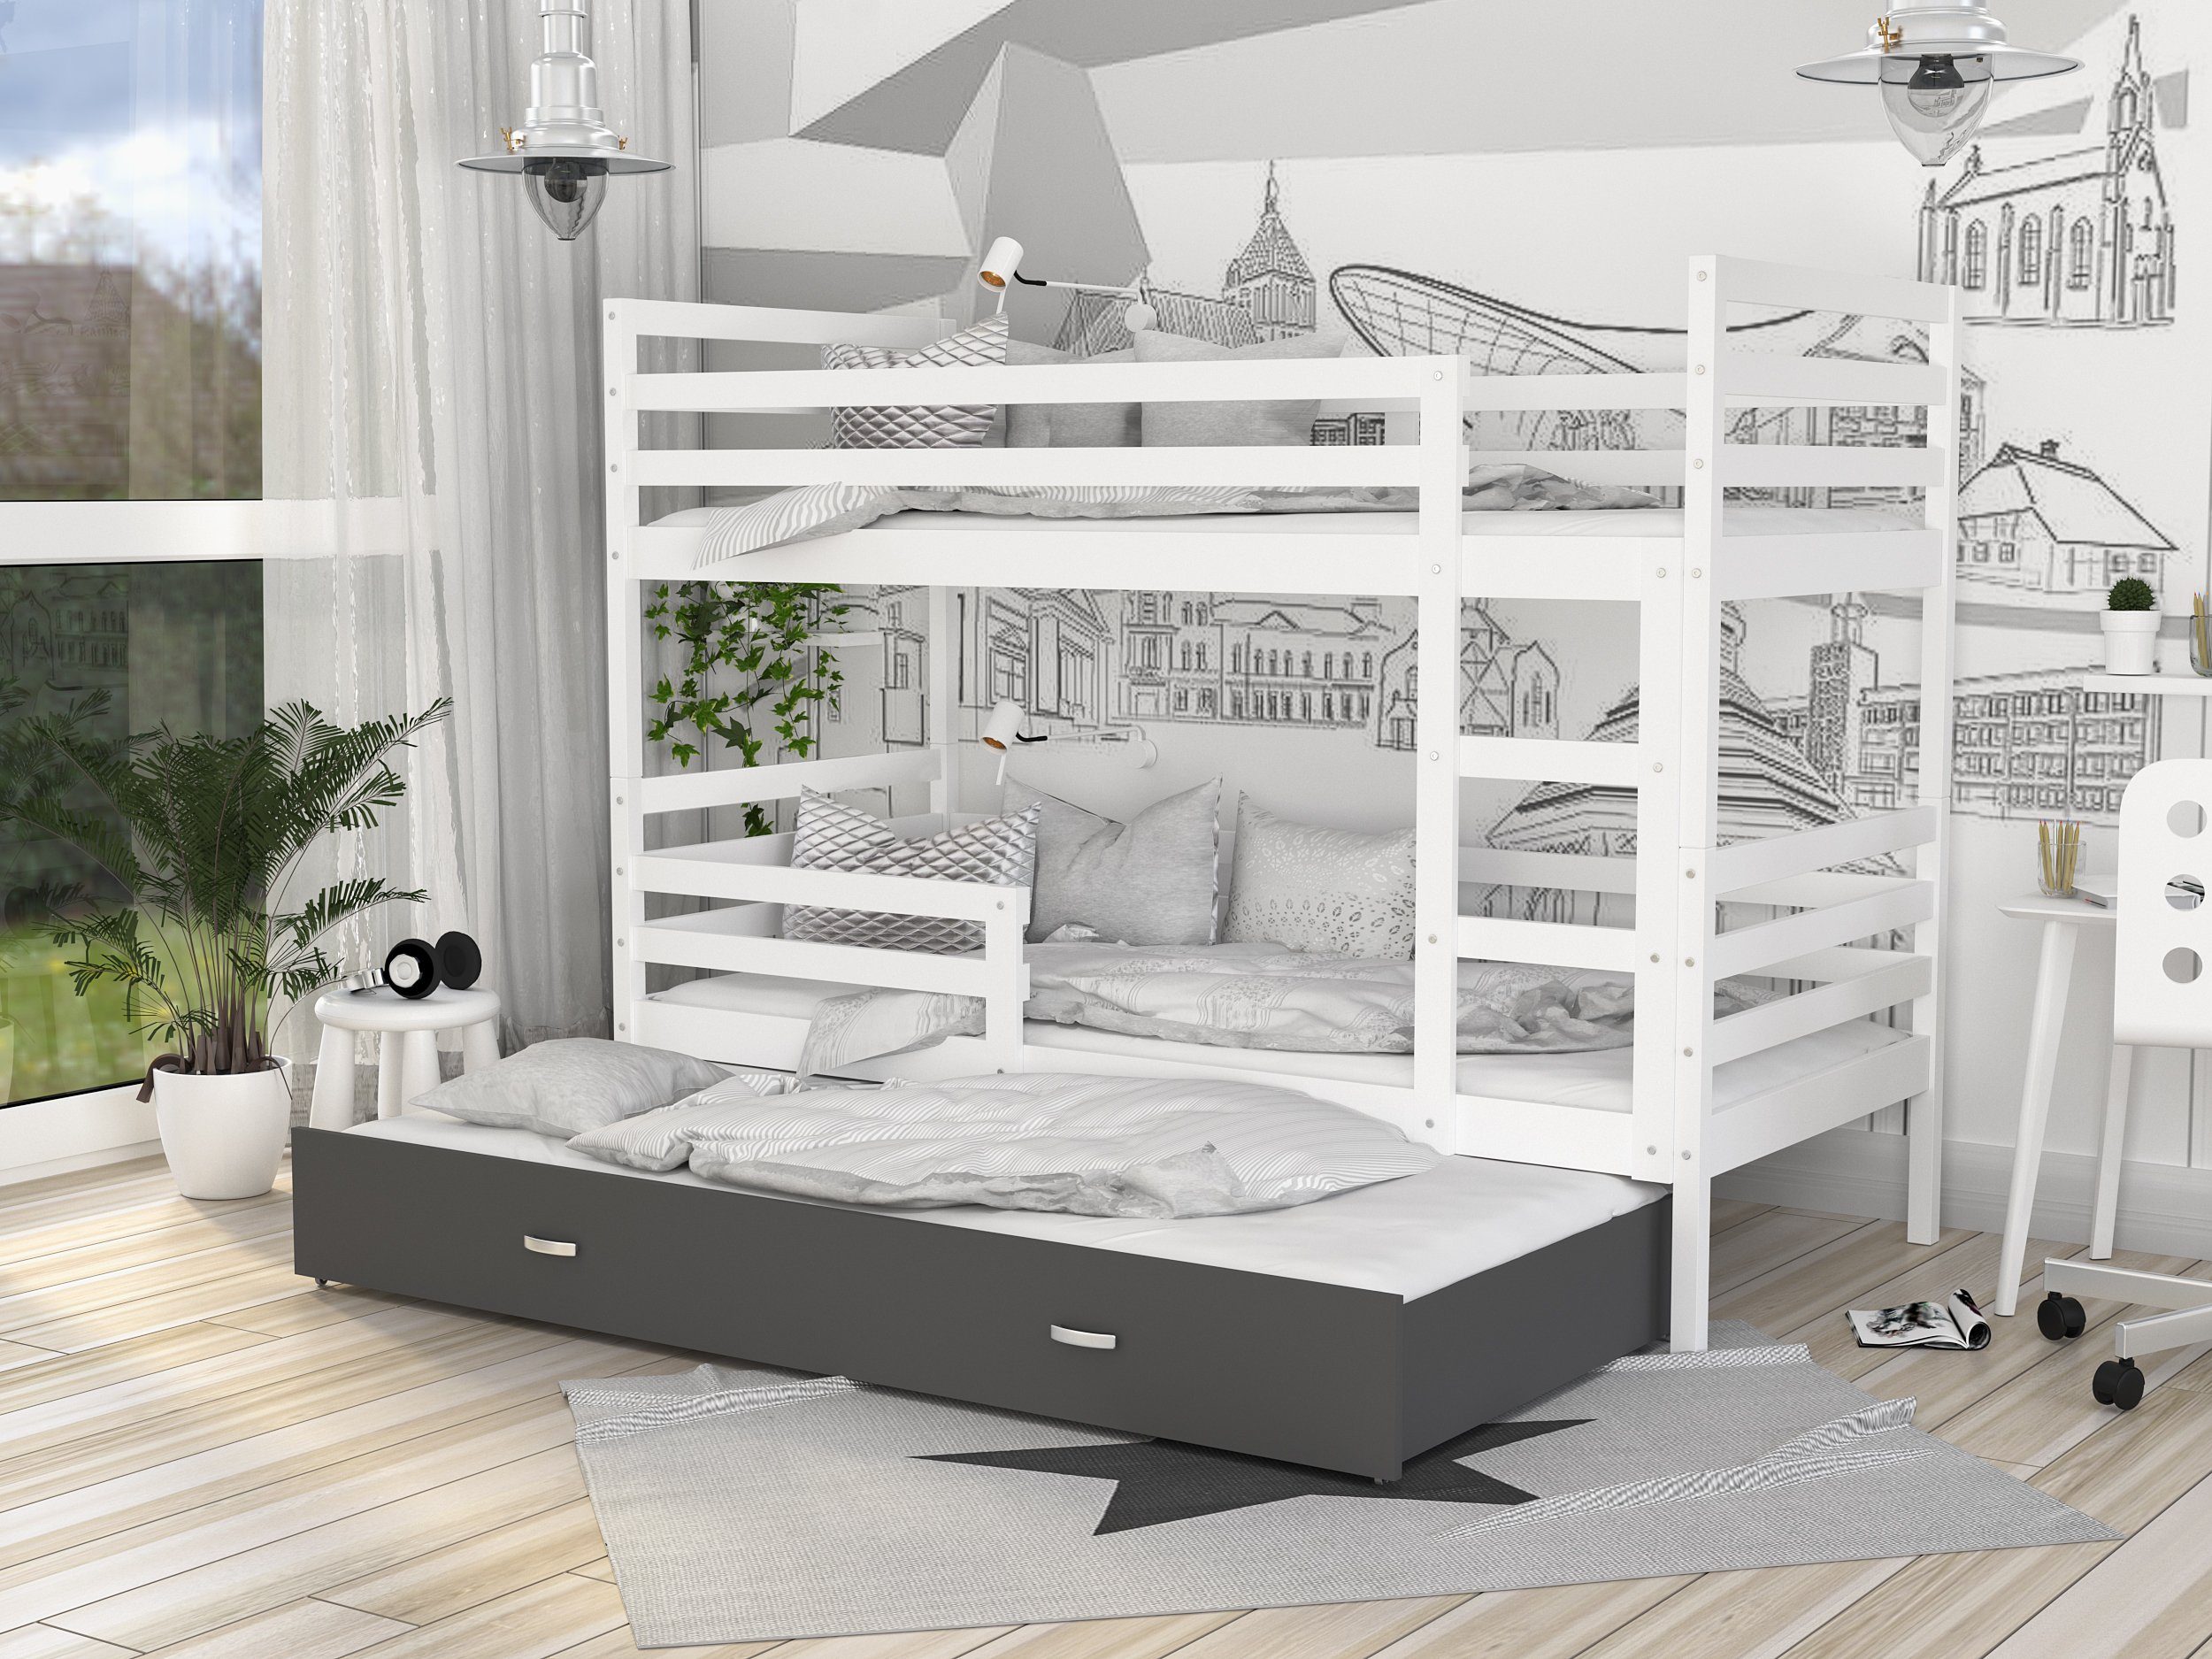 Siblo Kinderbett Jerry 3 (Flexibler Sicherheitsbarriere), Möbelplatte Bett Lattenrost, Schublade, Massivholz, Grau und Weiß